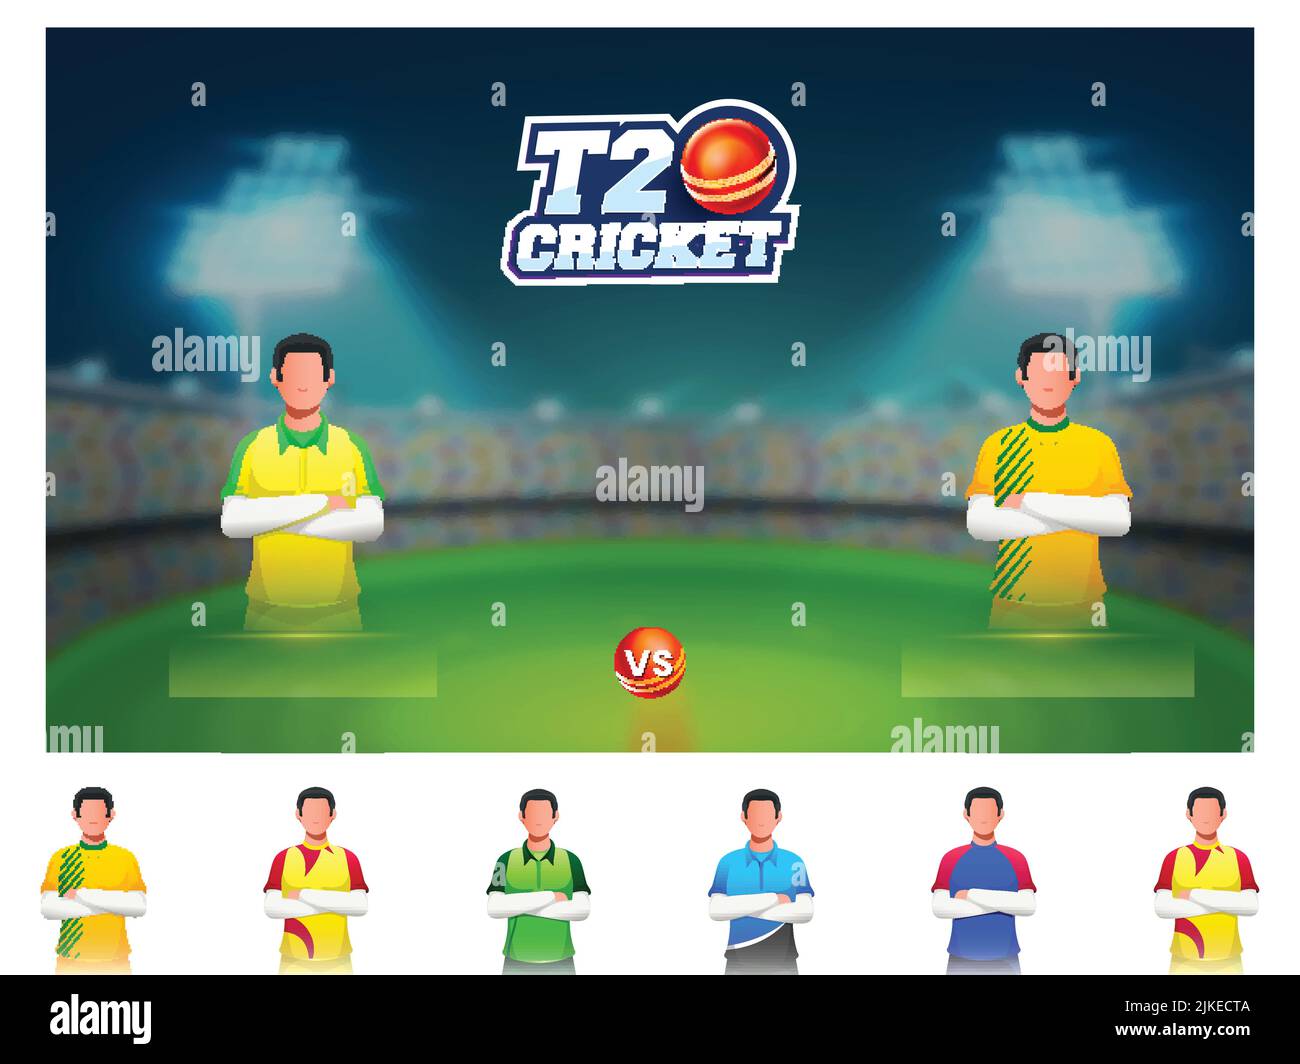 T20 Cricket Match Teilnehmerländer Spieler mit Australien gegen Südafrika Highlights auf verschwommenem Stadionhintergrund. Stock Vektor